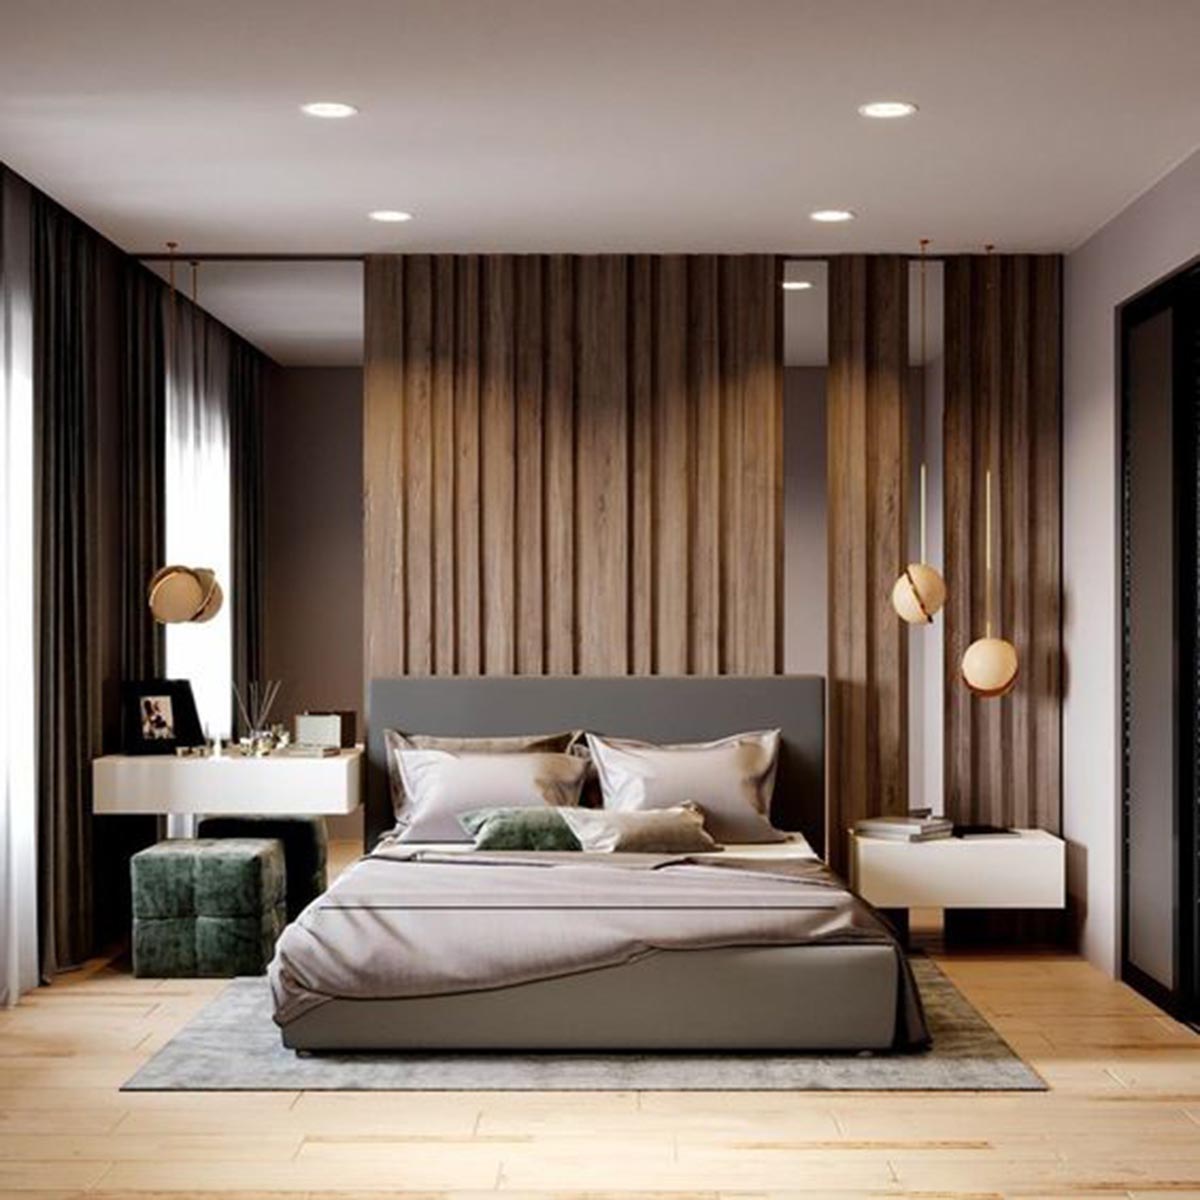 Tấm ốp gỗ dọc trong phòng ngủ.

Nguồn: thegioithamsan.vn